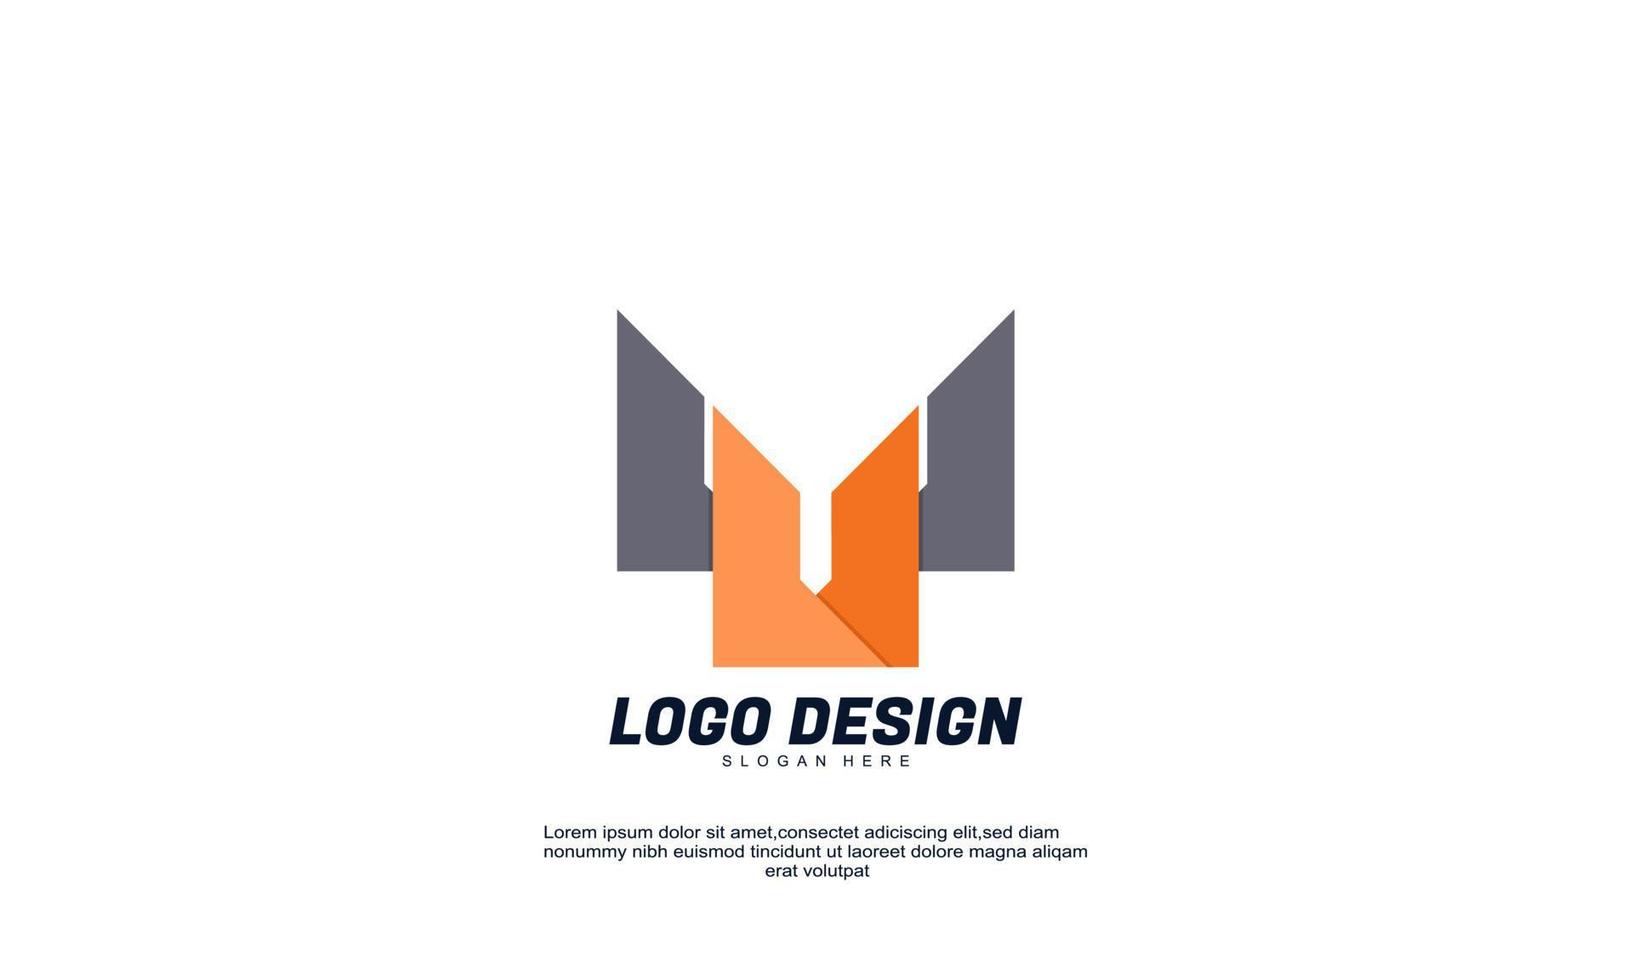 impressionante azienda logo disegno vettoriale emblema astratto disegni concetto loghi modello